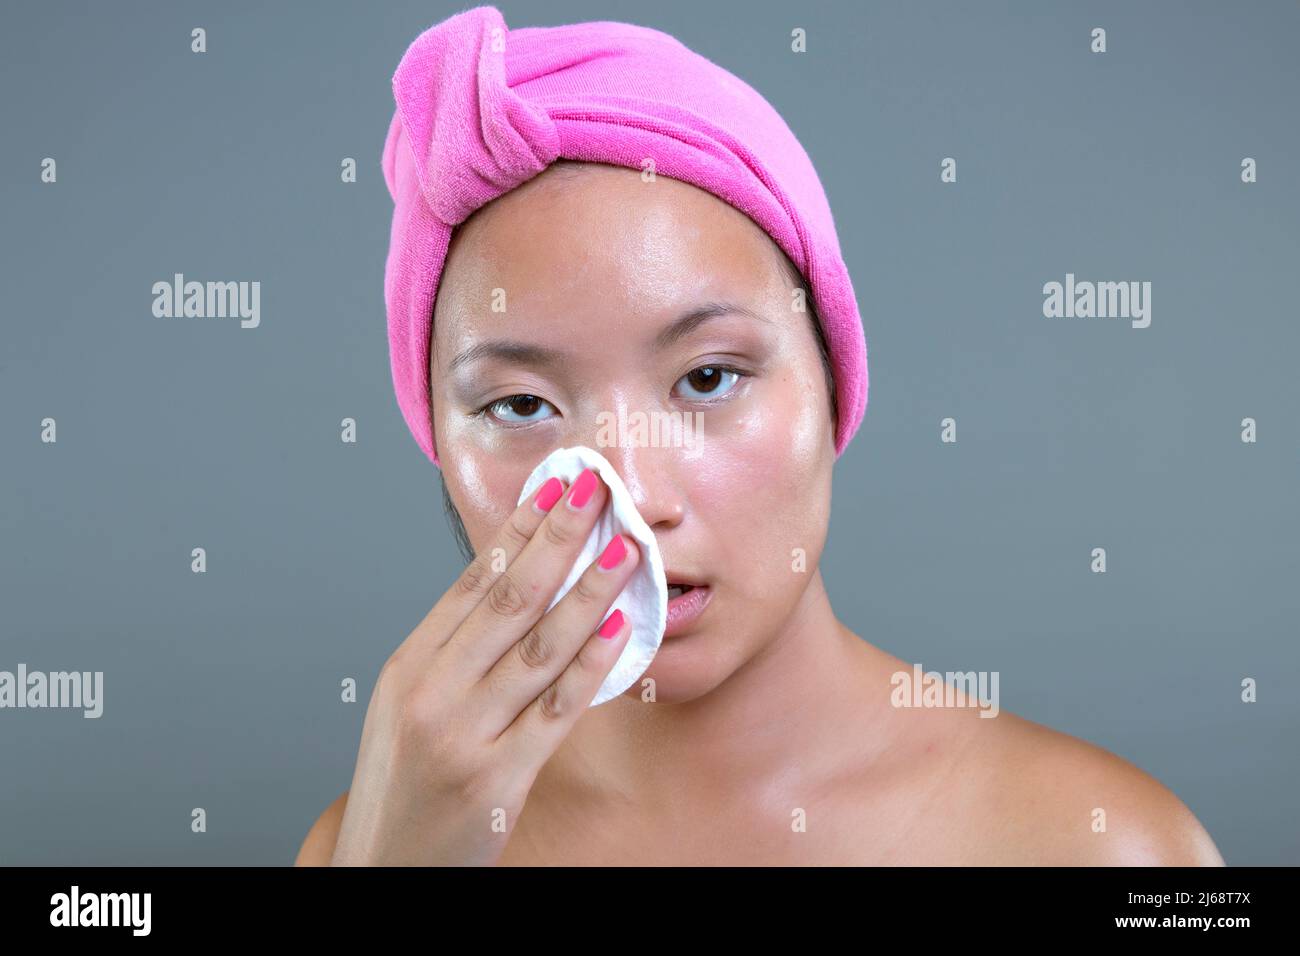 mujer joven de origen asiático limpiando su cara Foto de stock